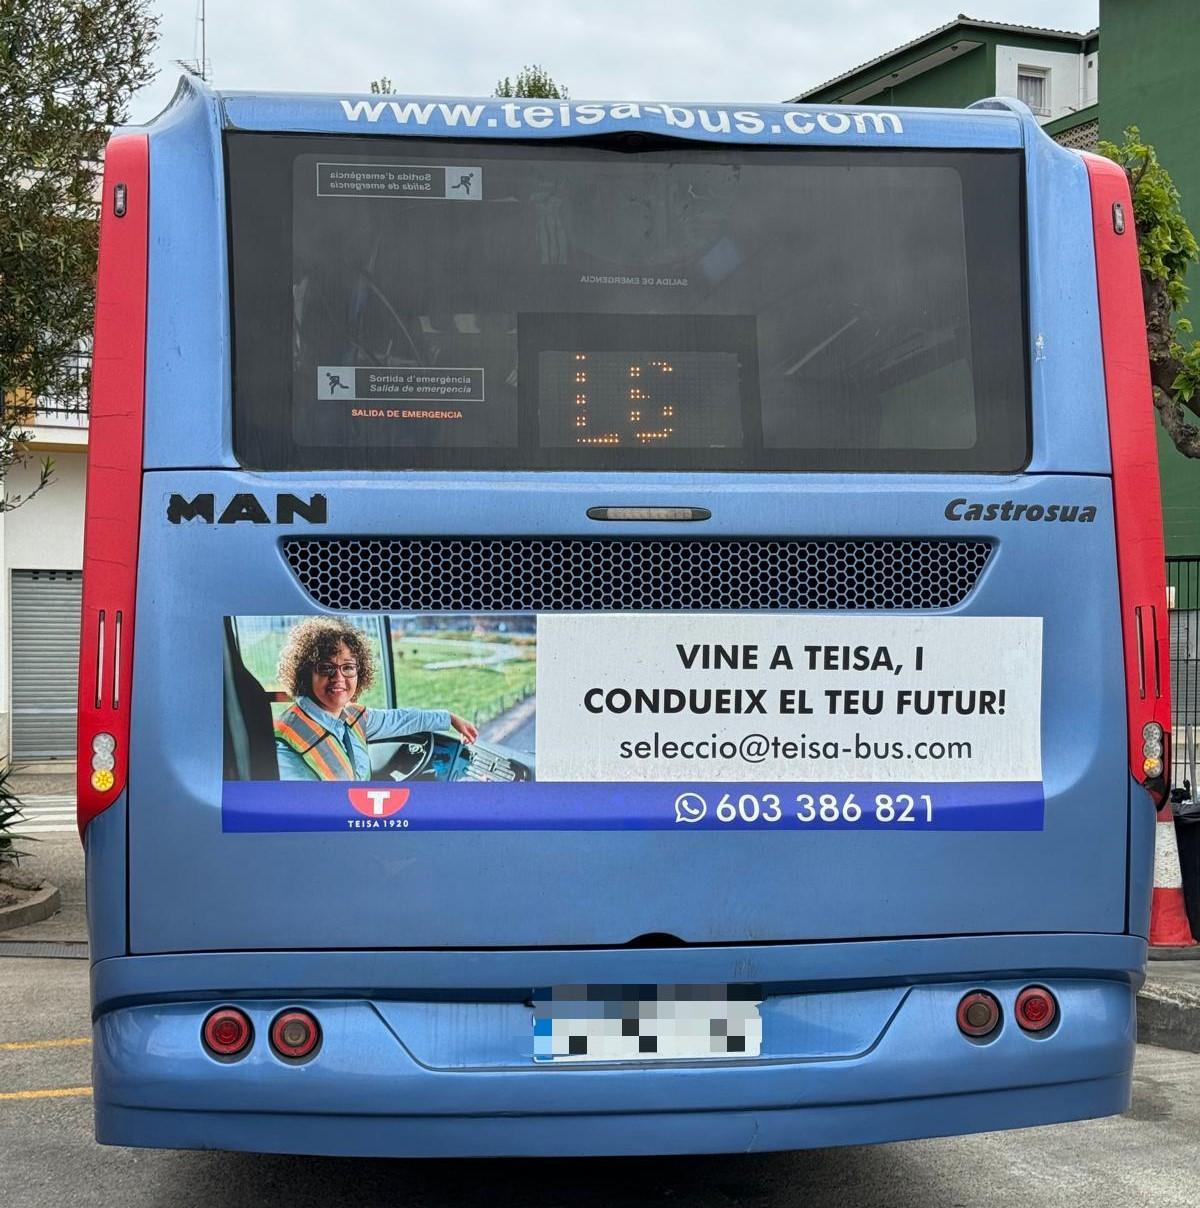 L’oferta de feina de Teisa, publicada a la part posterior d’un autobús que opera la companyia d’autocars gironina